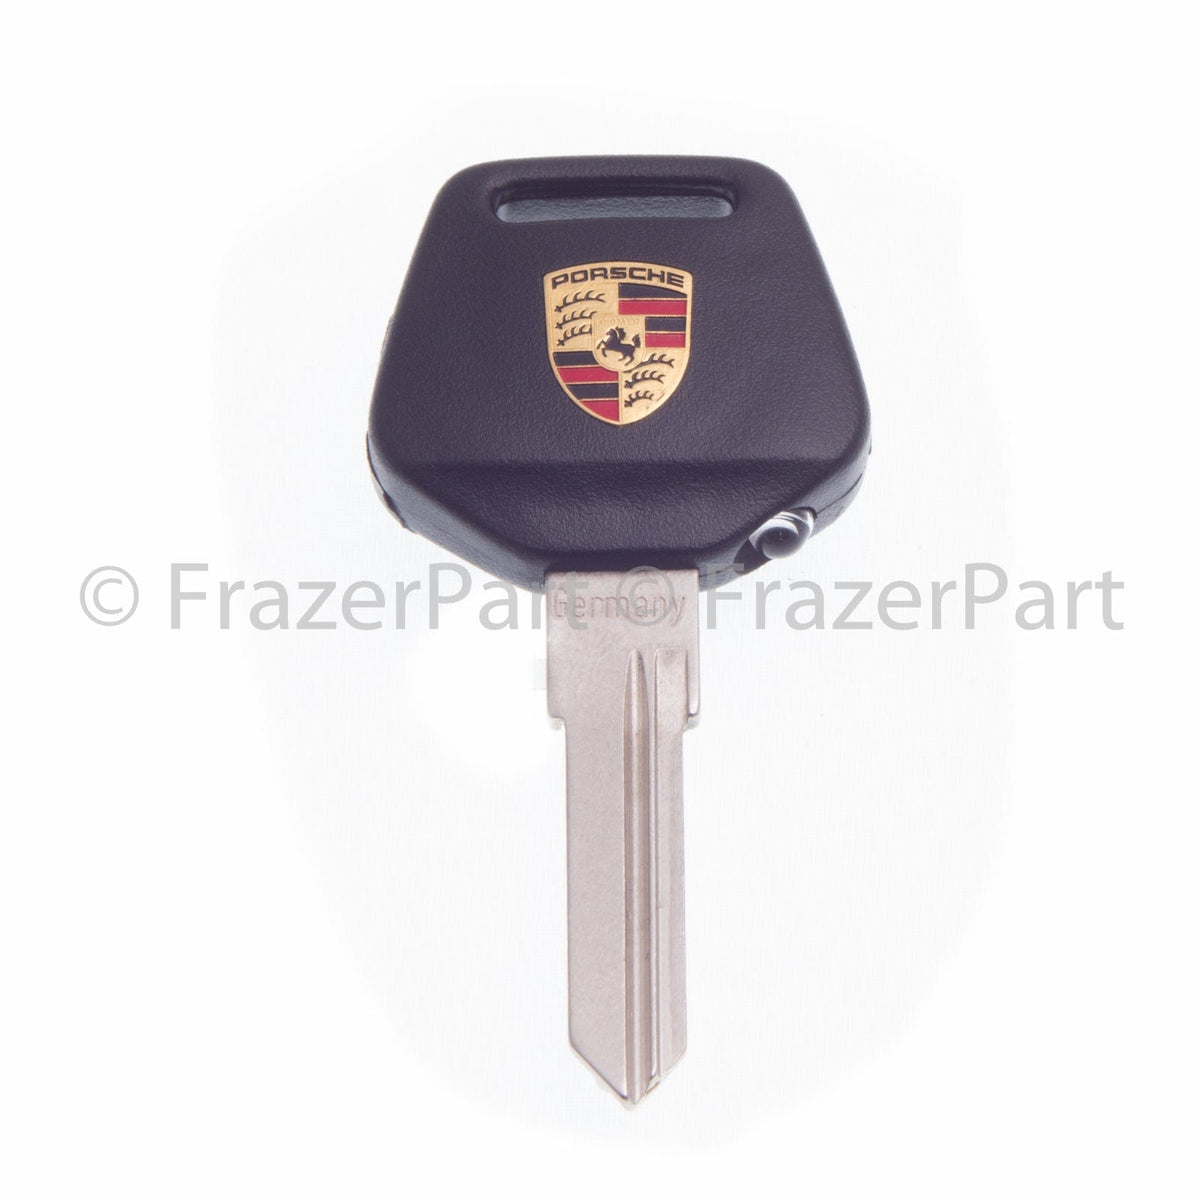 924, 944, 968 Cabeza de llave con escudo de Porsche, luz y hoja de llave ciega